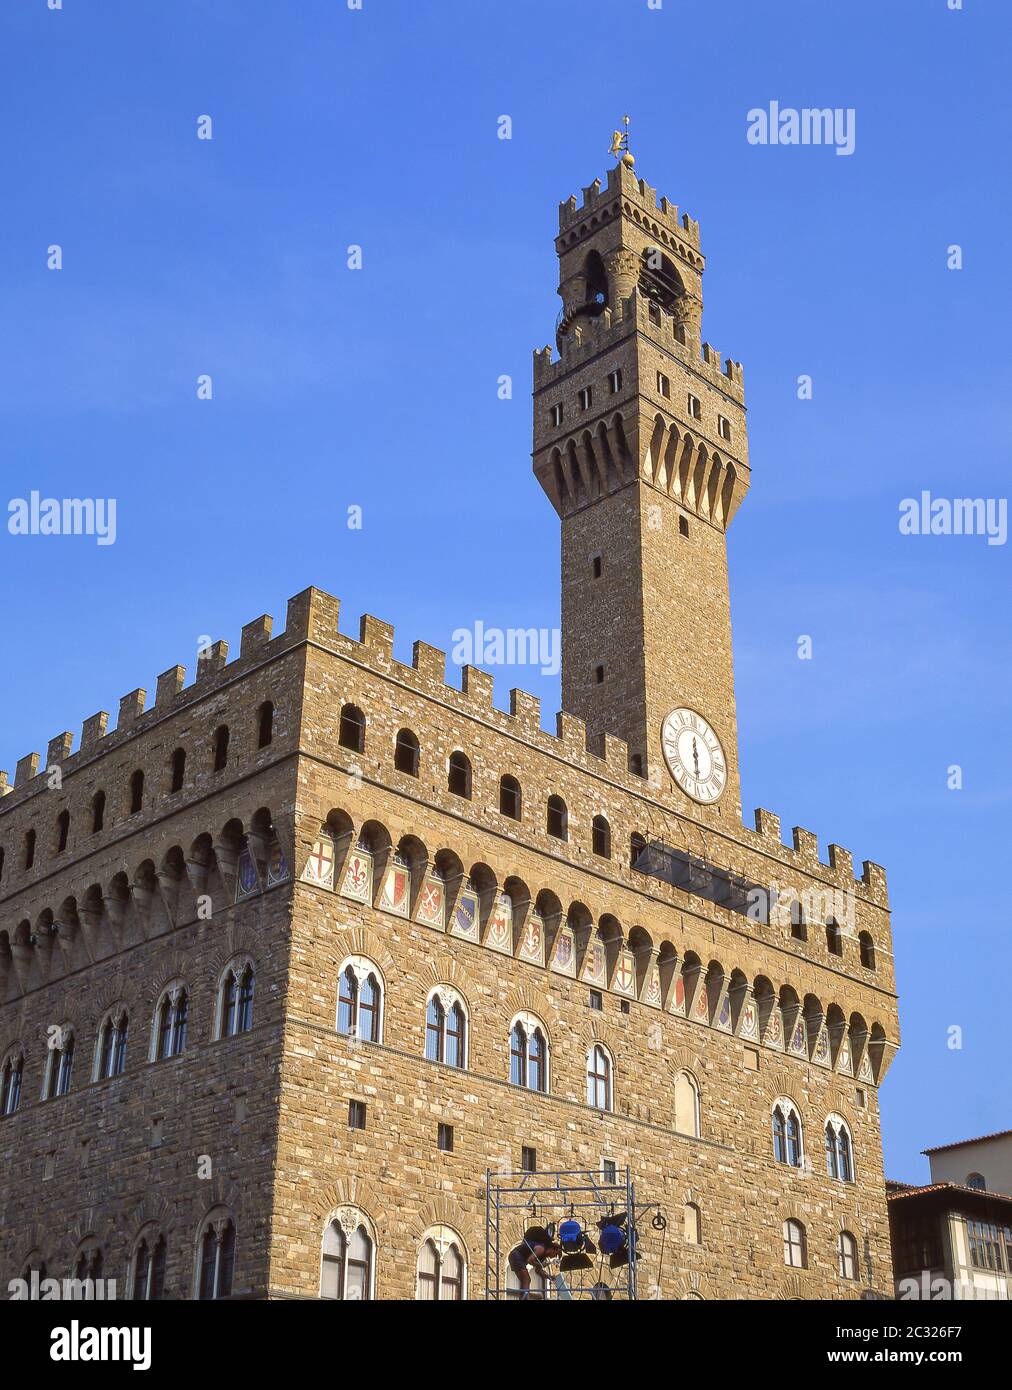 Palazzo Vecchio, Piazza della Signoria, Florenz (Firenze), Toskana Region, Italien Stockfoto